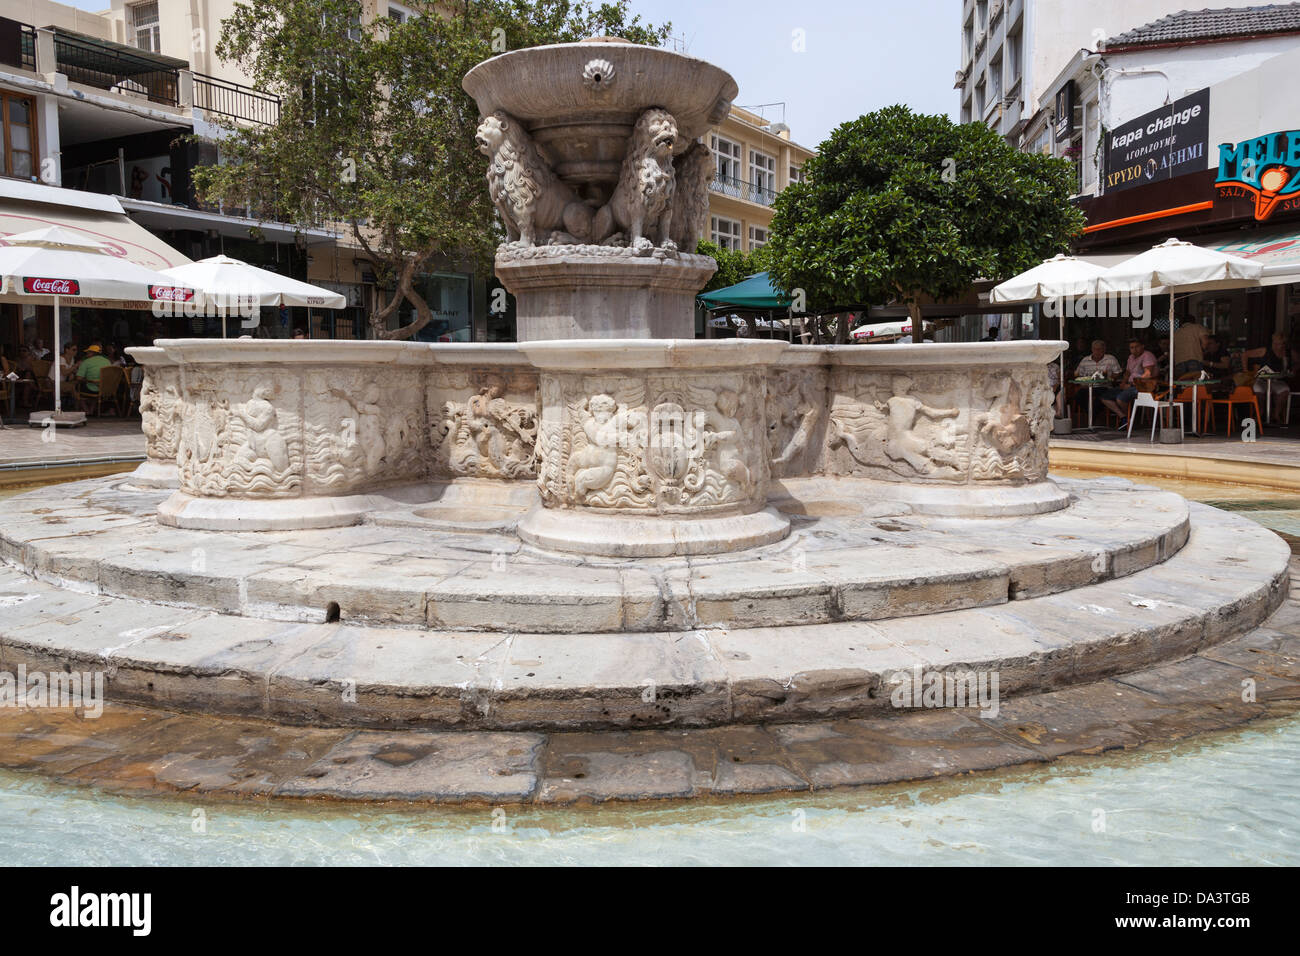 Morosini Fountain, Eleftheriou Venizelou Square, also known as Four Lions Square, Heraklion, Crete, Greece Stock Photo